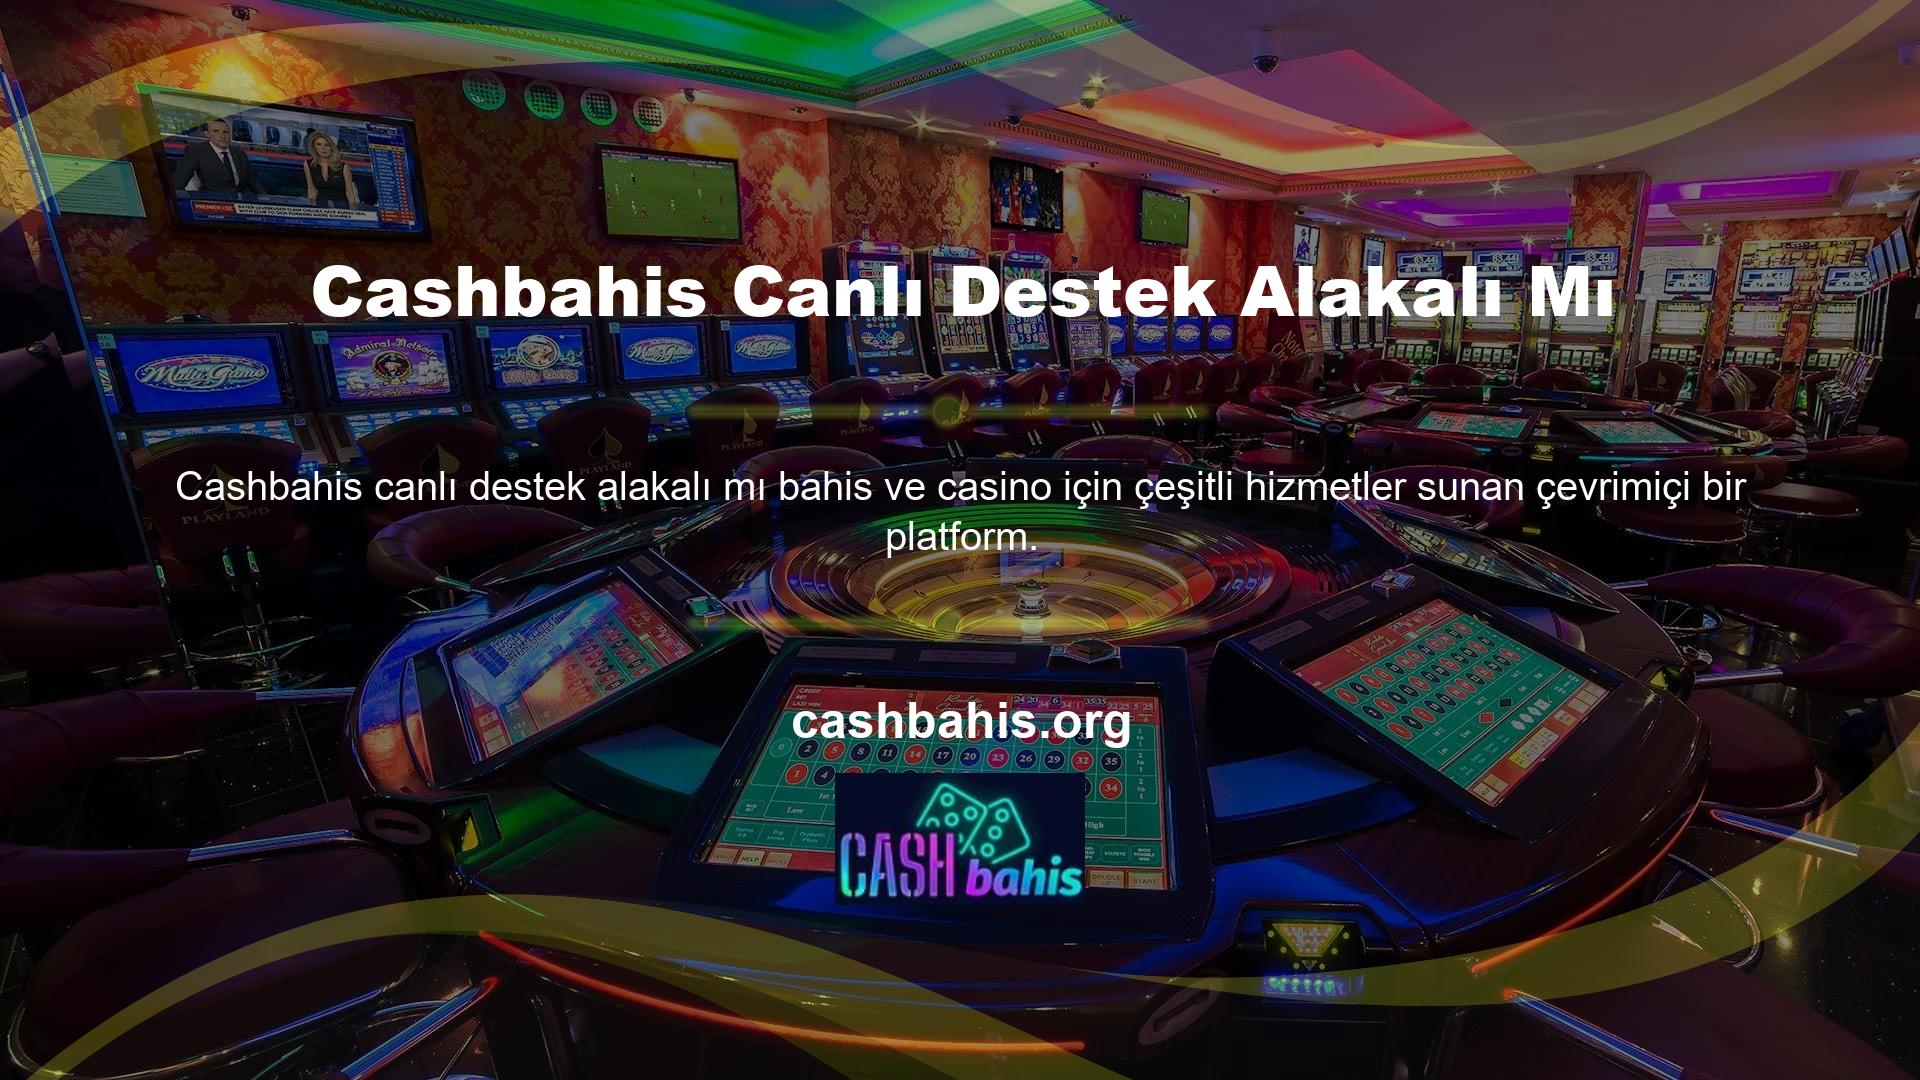 Bu web sitesi Türkiye’de çevrimiçi casino konusunda güvenilirdir